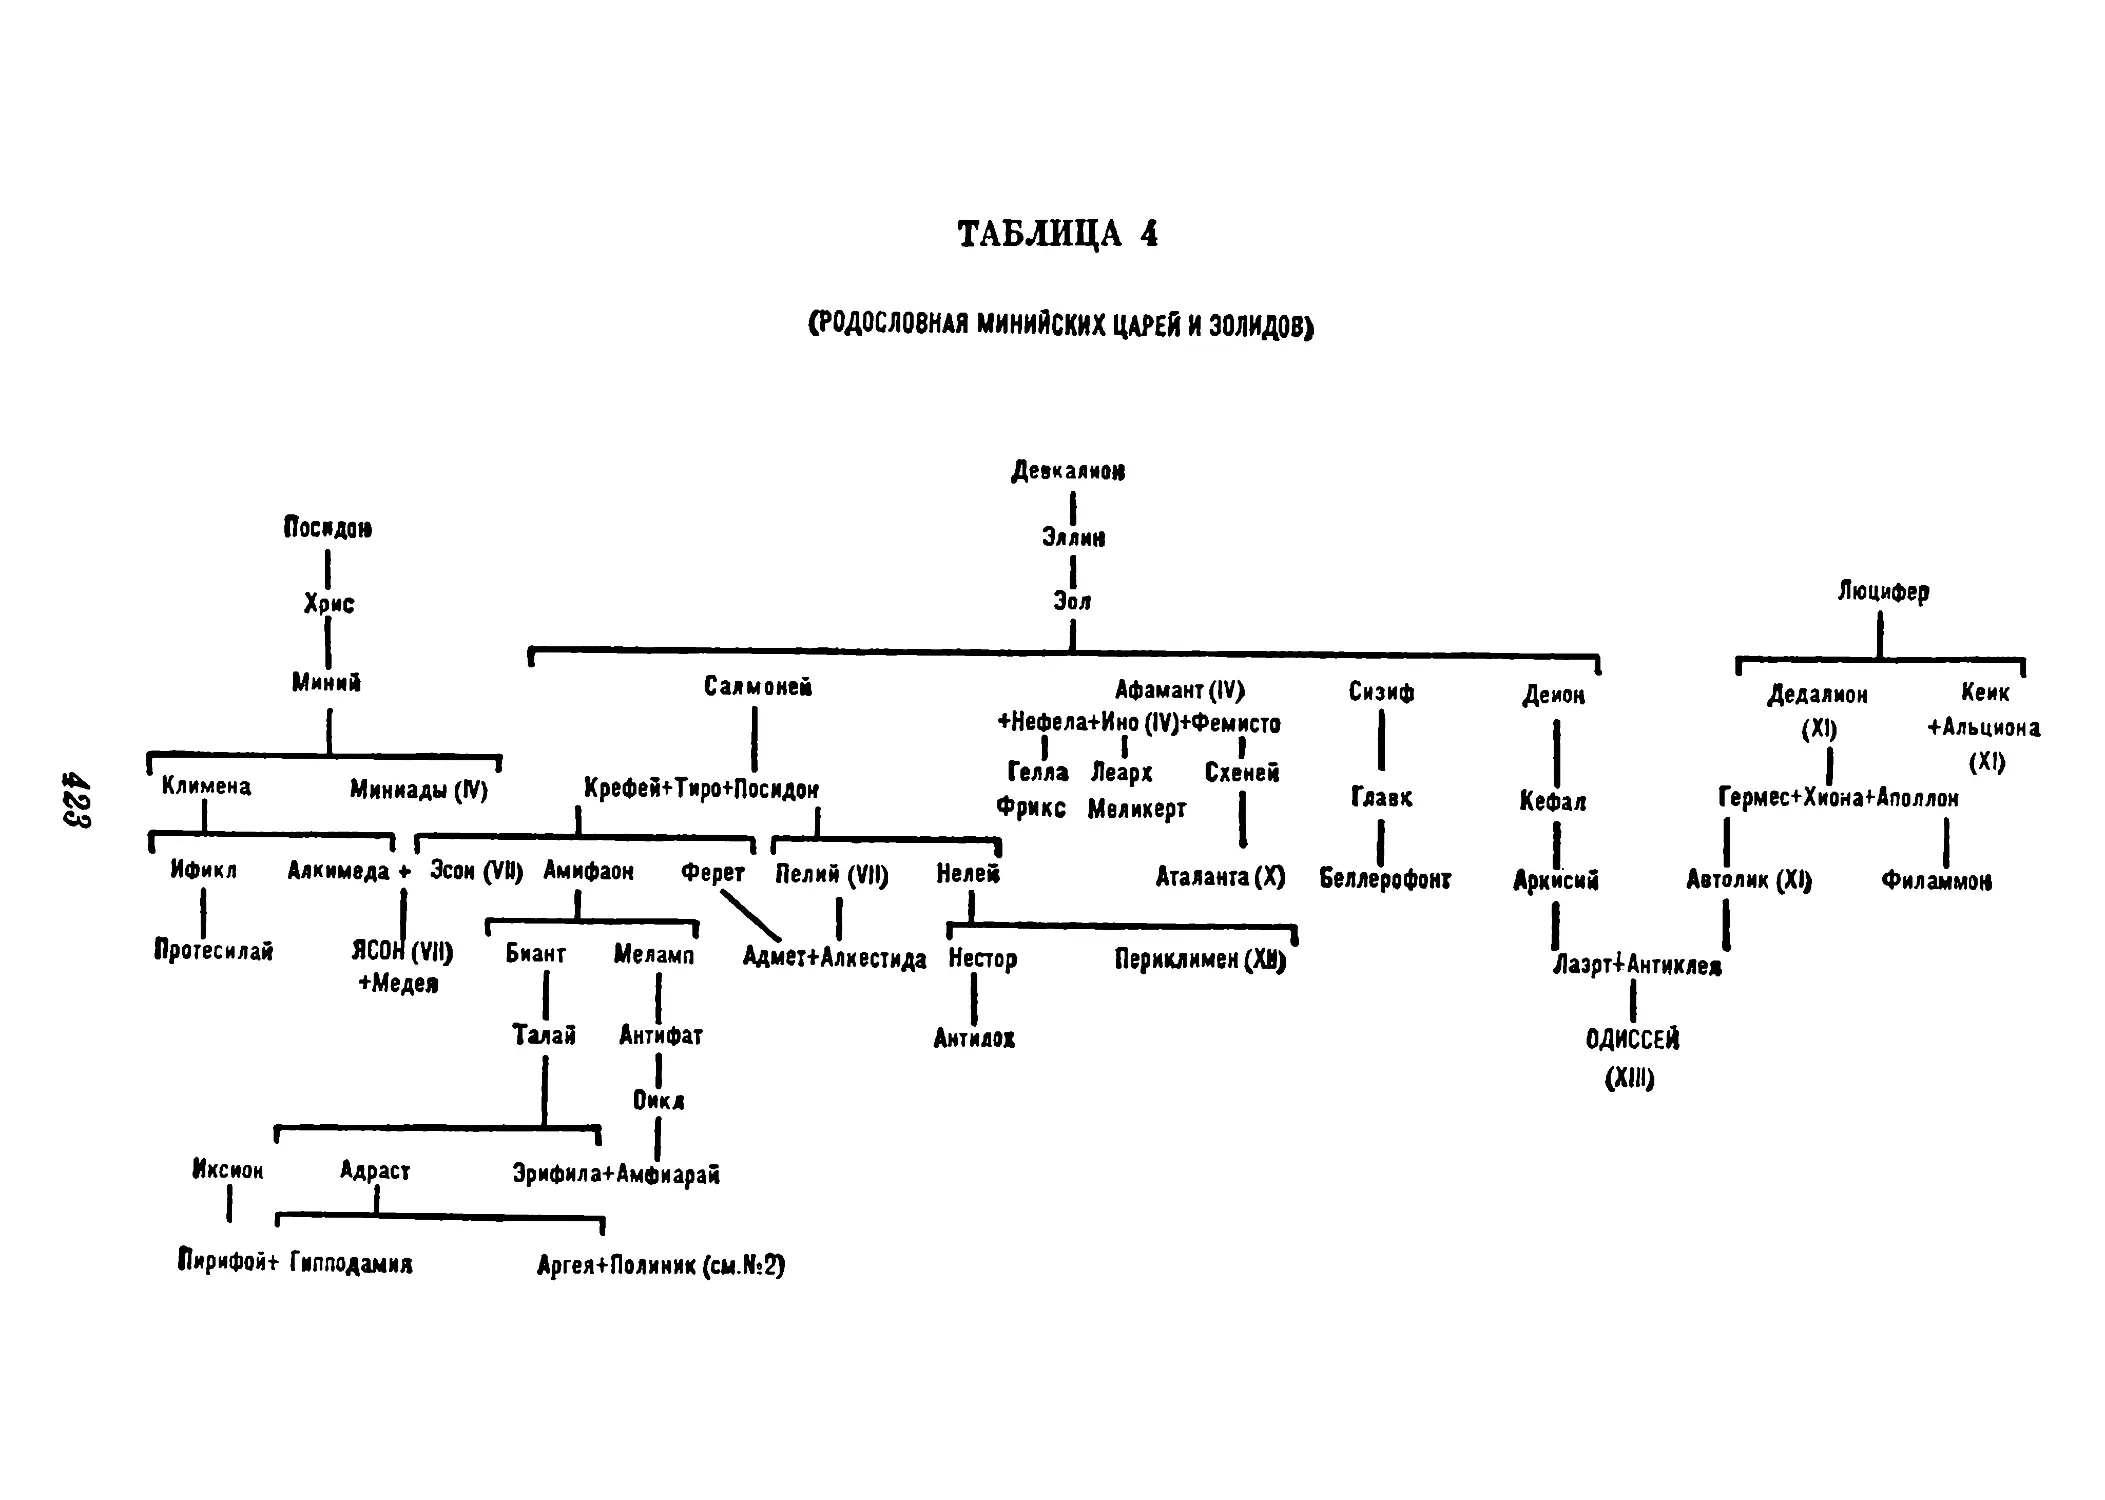 Таблица 5. Родословная кдлидонских и спартанских царей